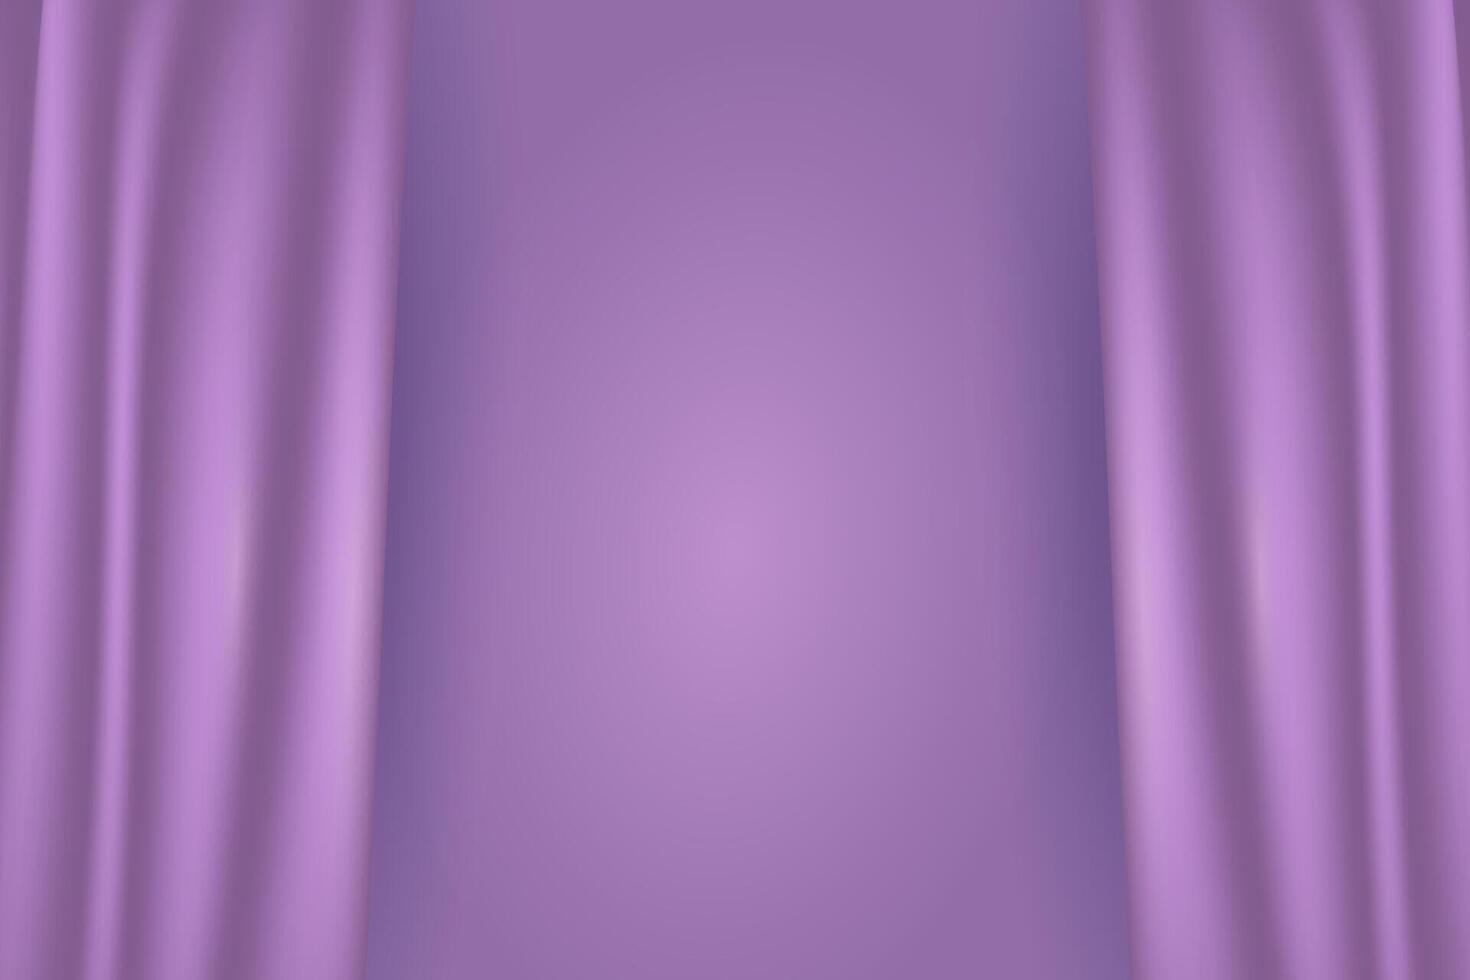 Textur von Seide, Satin, Vorhänge Stoff auf luxuriös Hintergrund. Portiere, Vorhang Material Rosa lila violett Trend Farbe. vektor